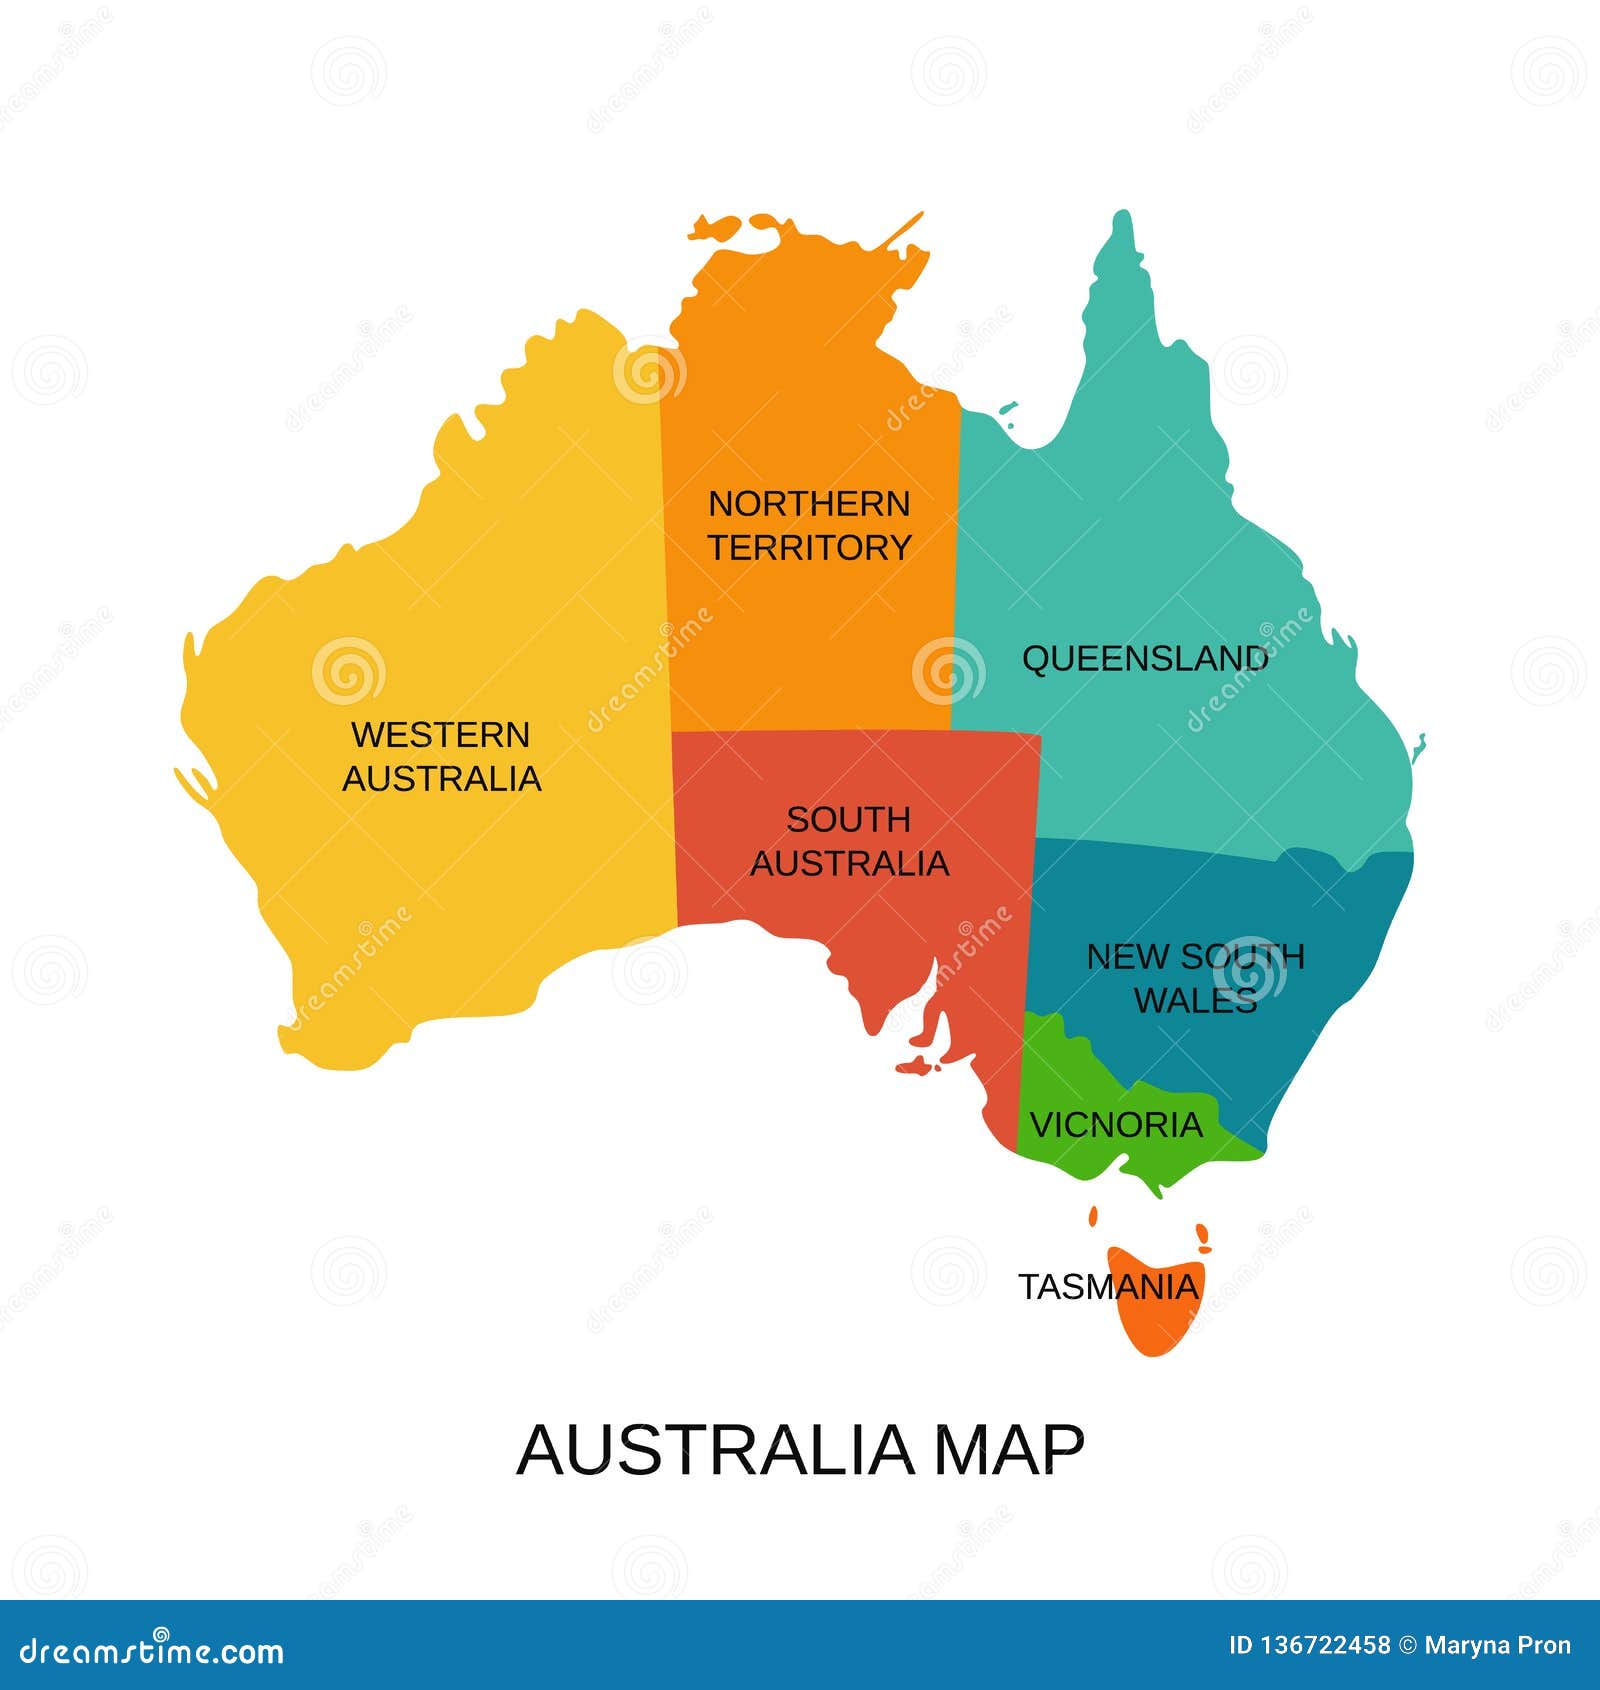 Австралия южный уэльс национальная премьер лига. Южная Австралия на карте. Штат Западная Австралия карта. Штат Южная Австралия на карте. Западная Австралия на карте.